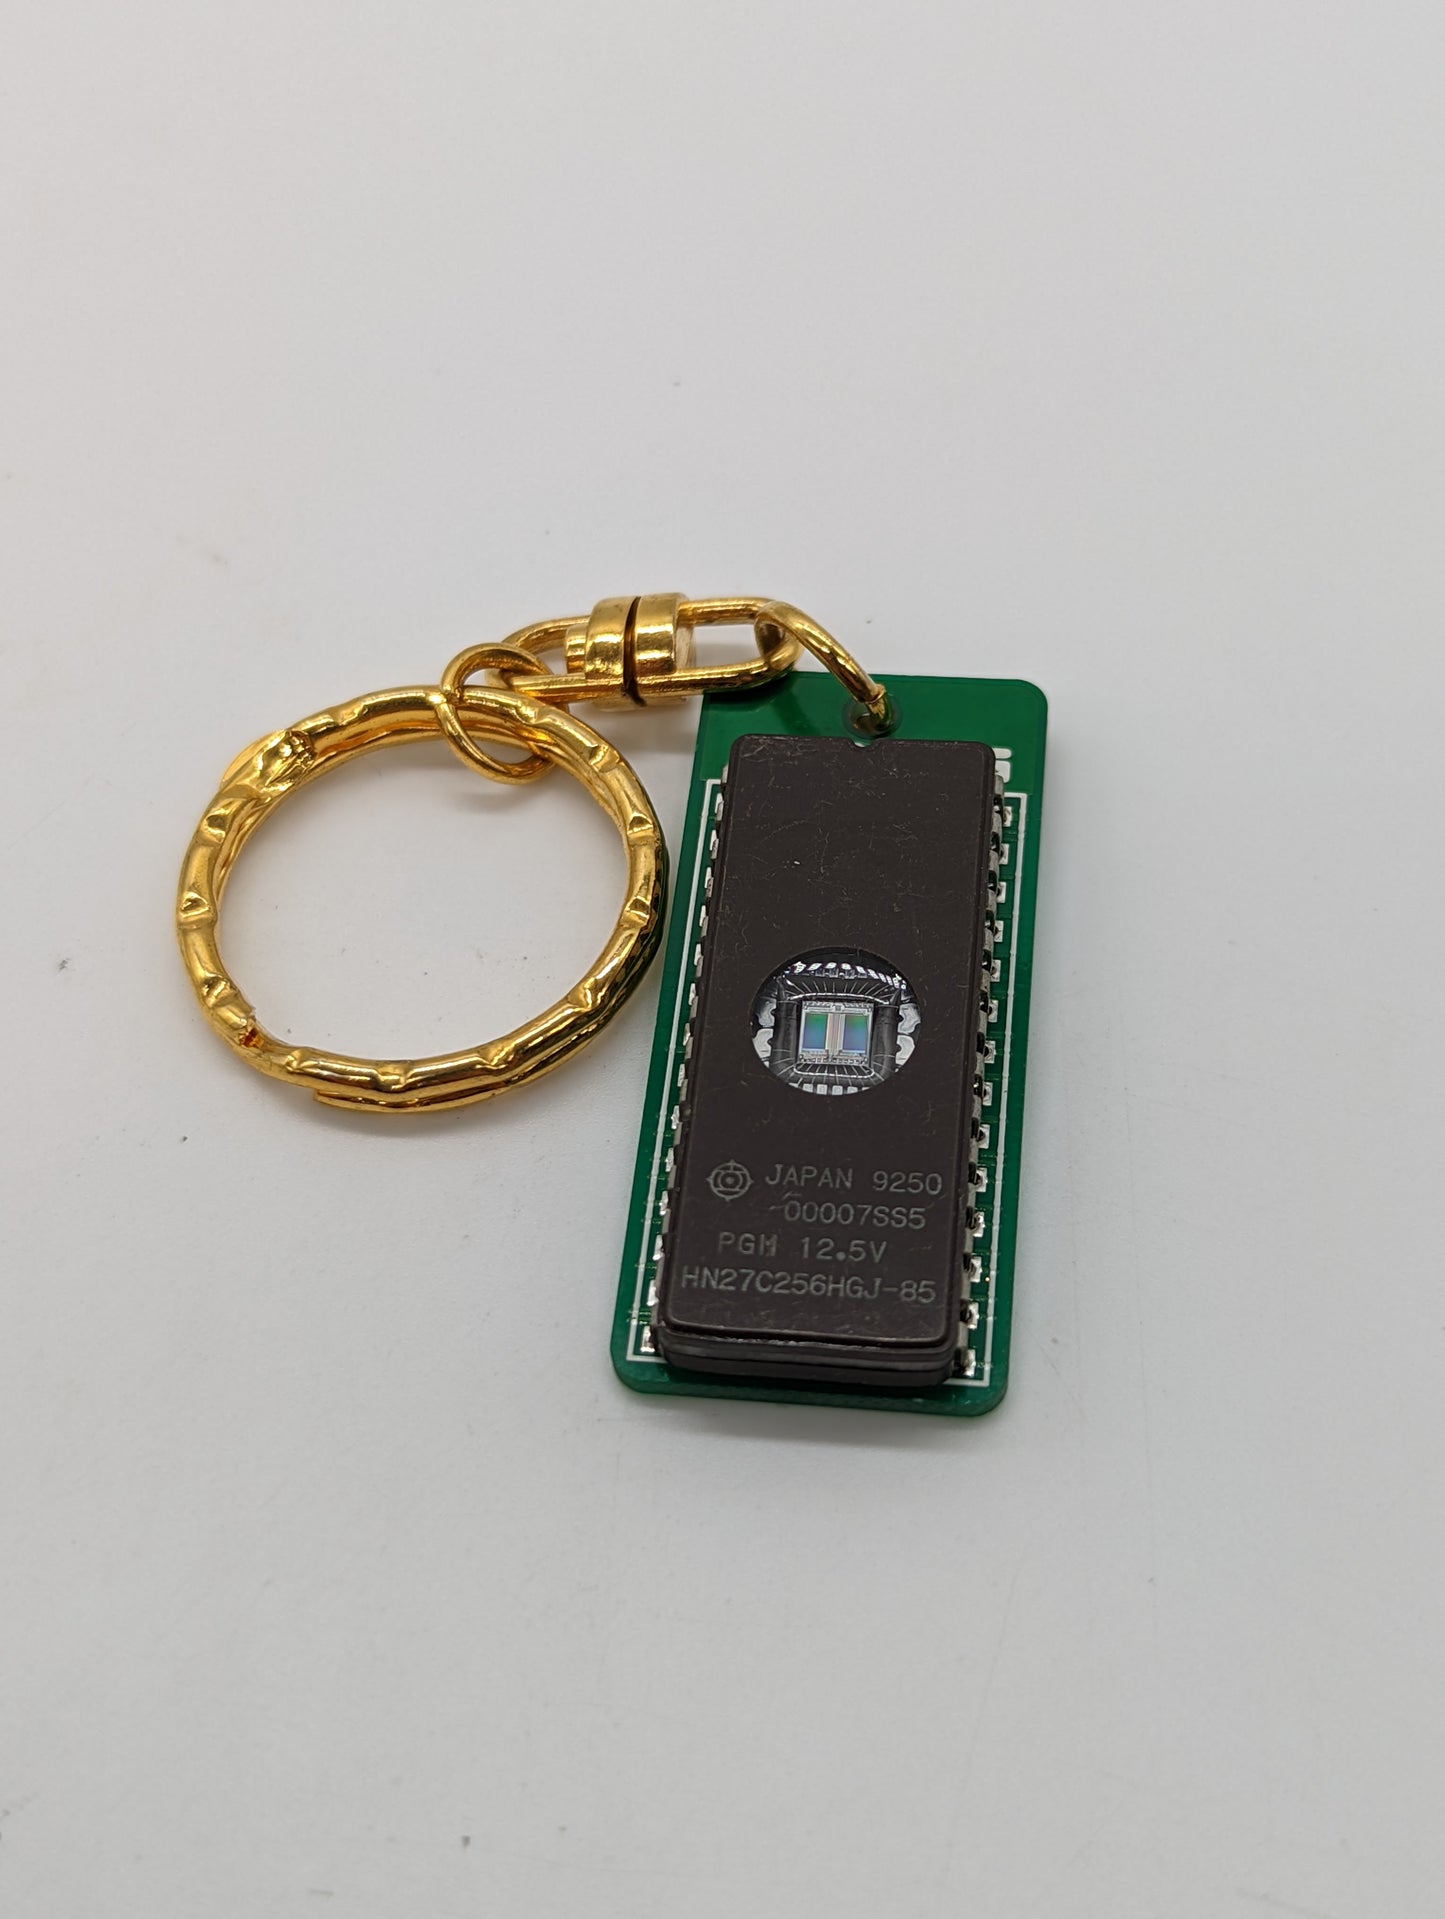 Mine's VX-rom keychain